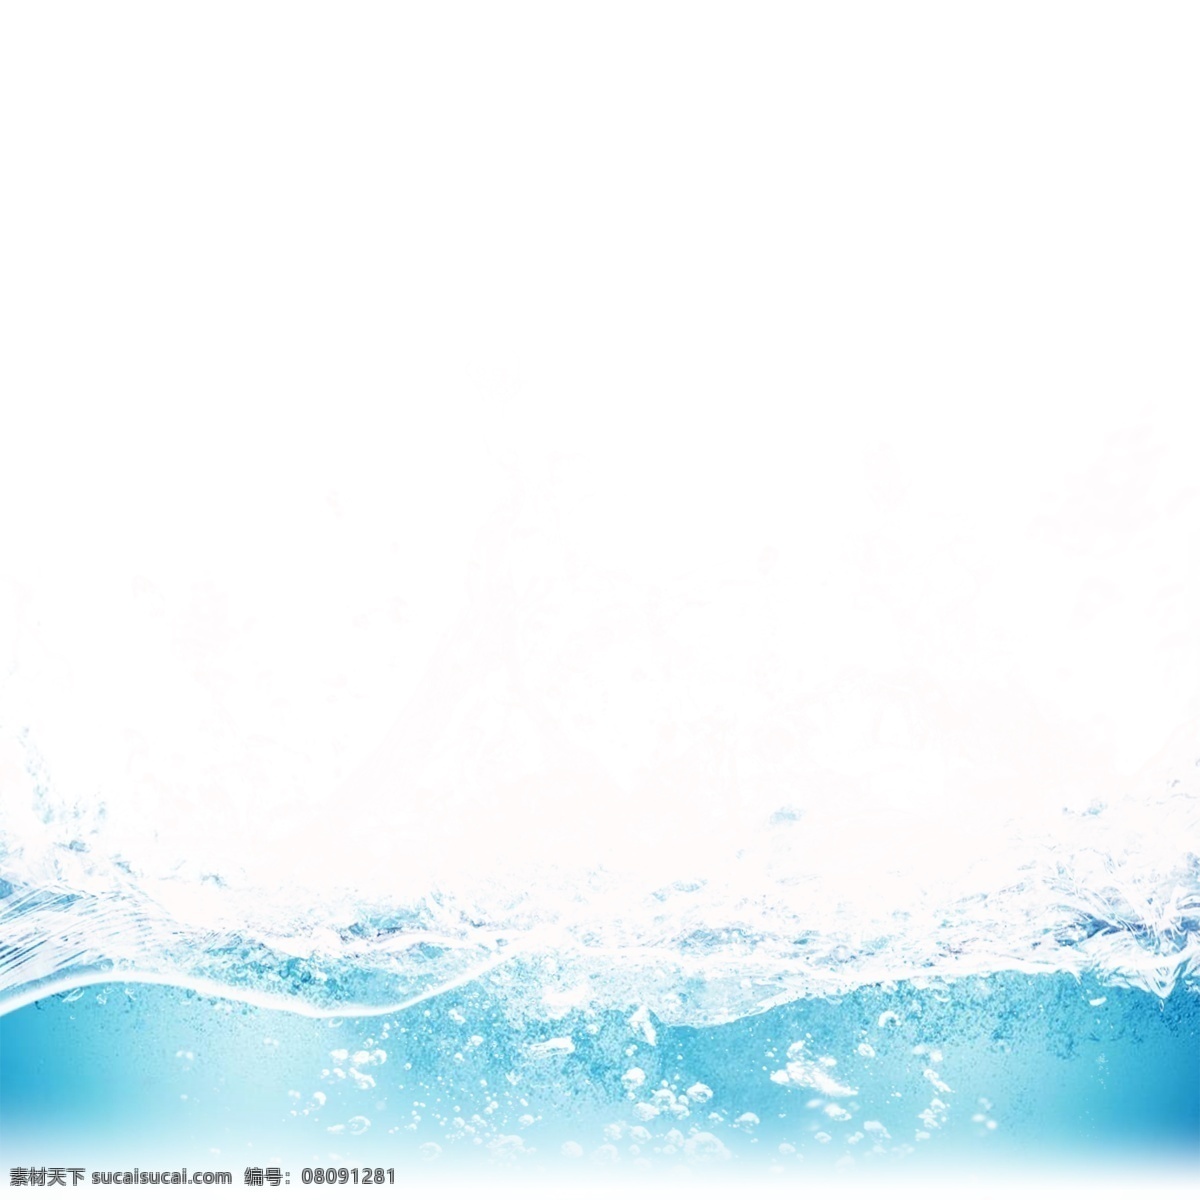 水花 水浪 蓝色 水滴 元素 喷溅 动感 水珠 蓝色水花 晶莹 透明